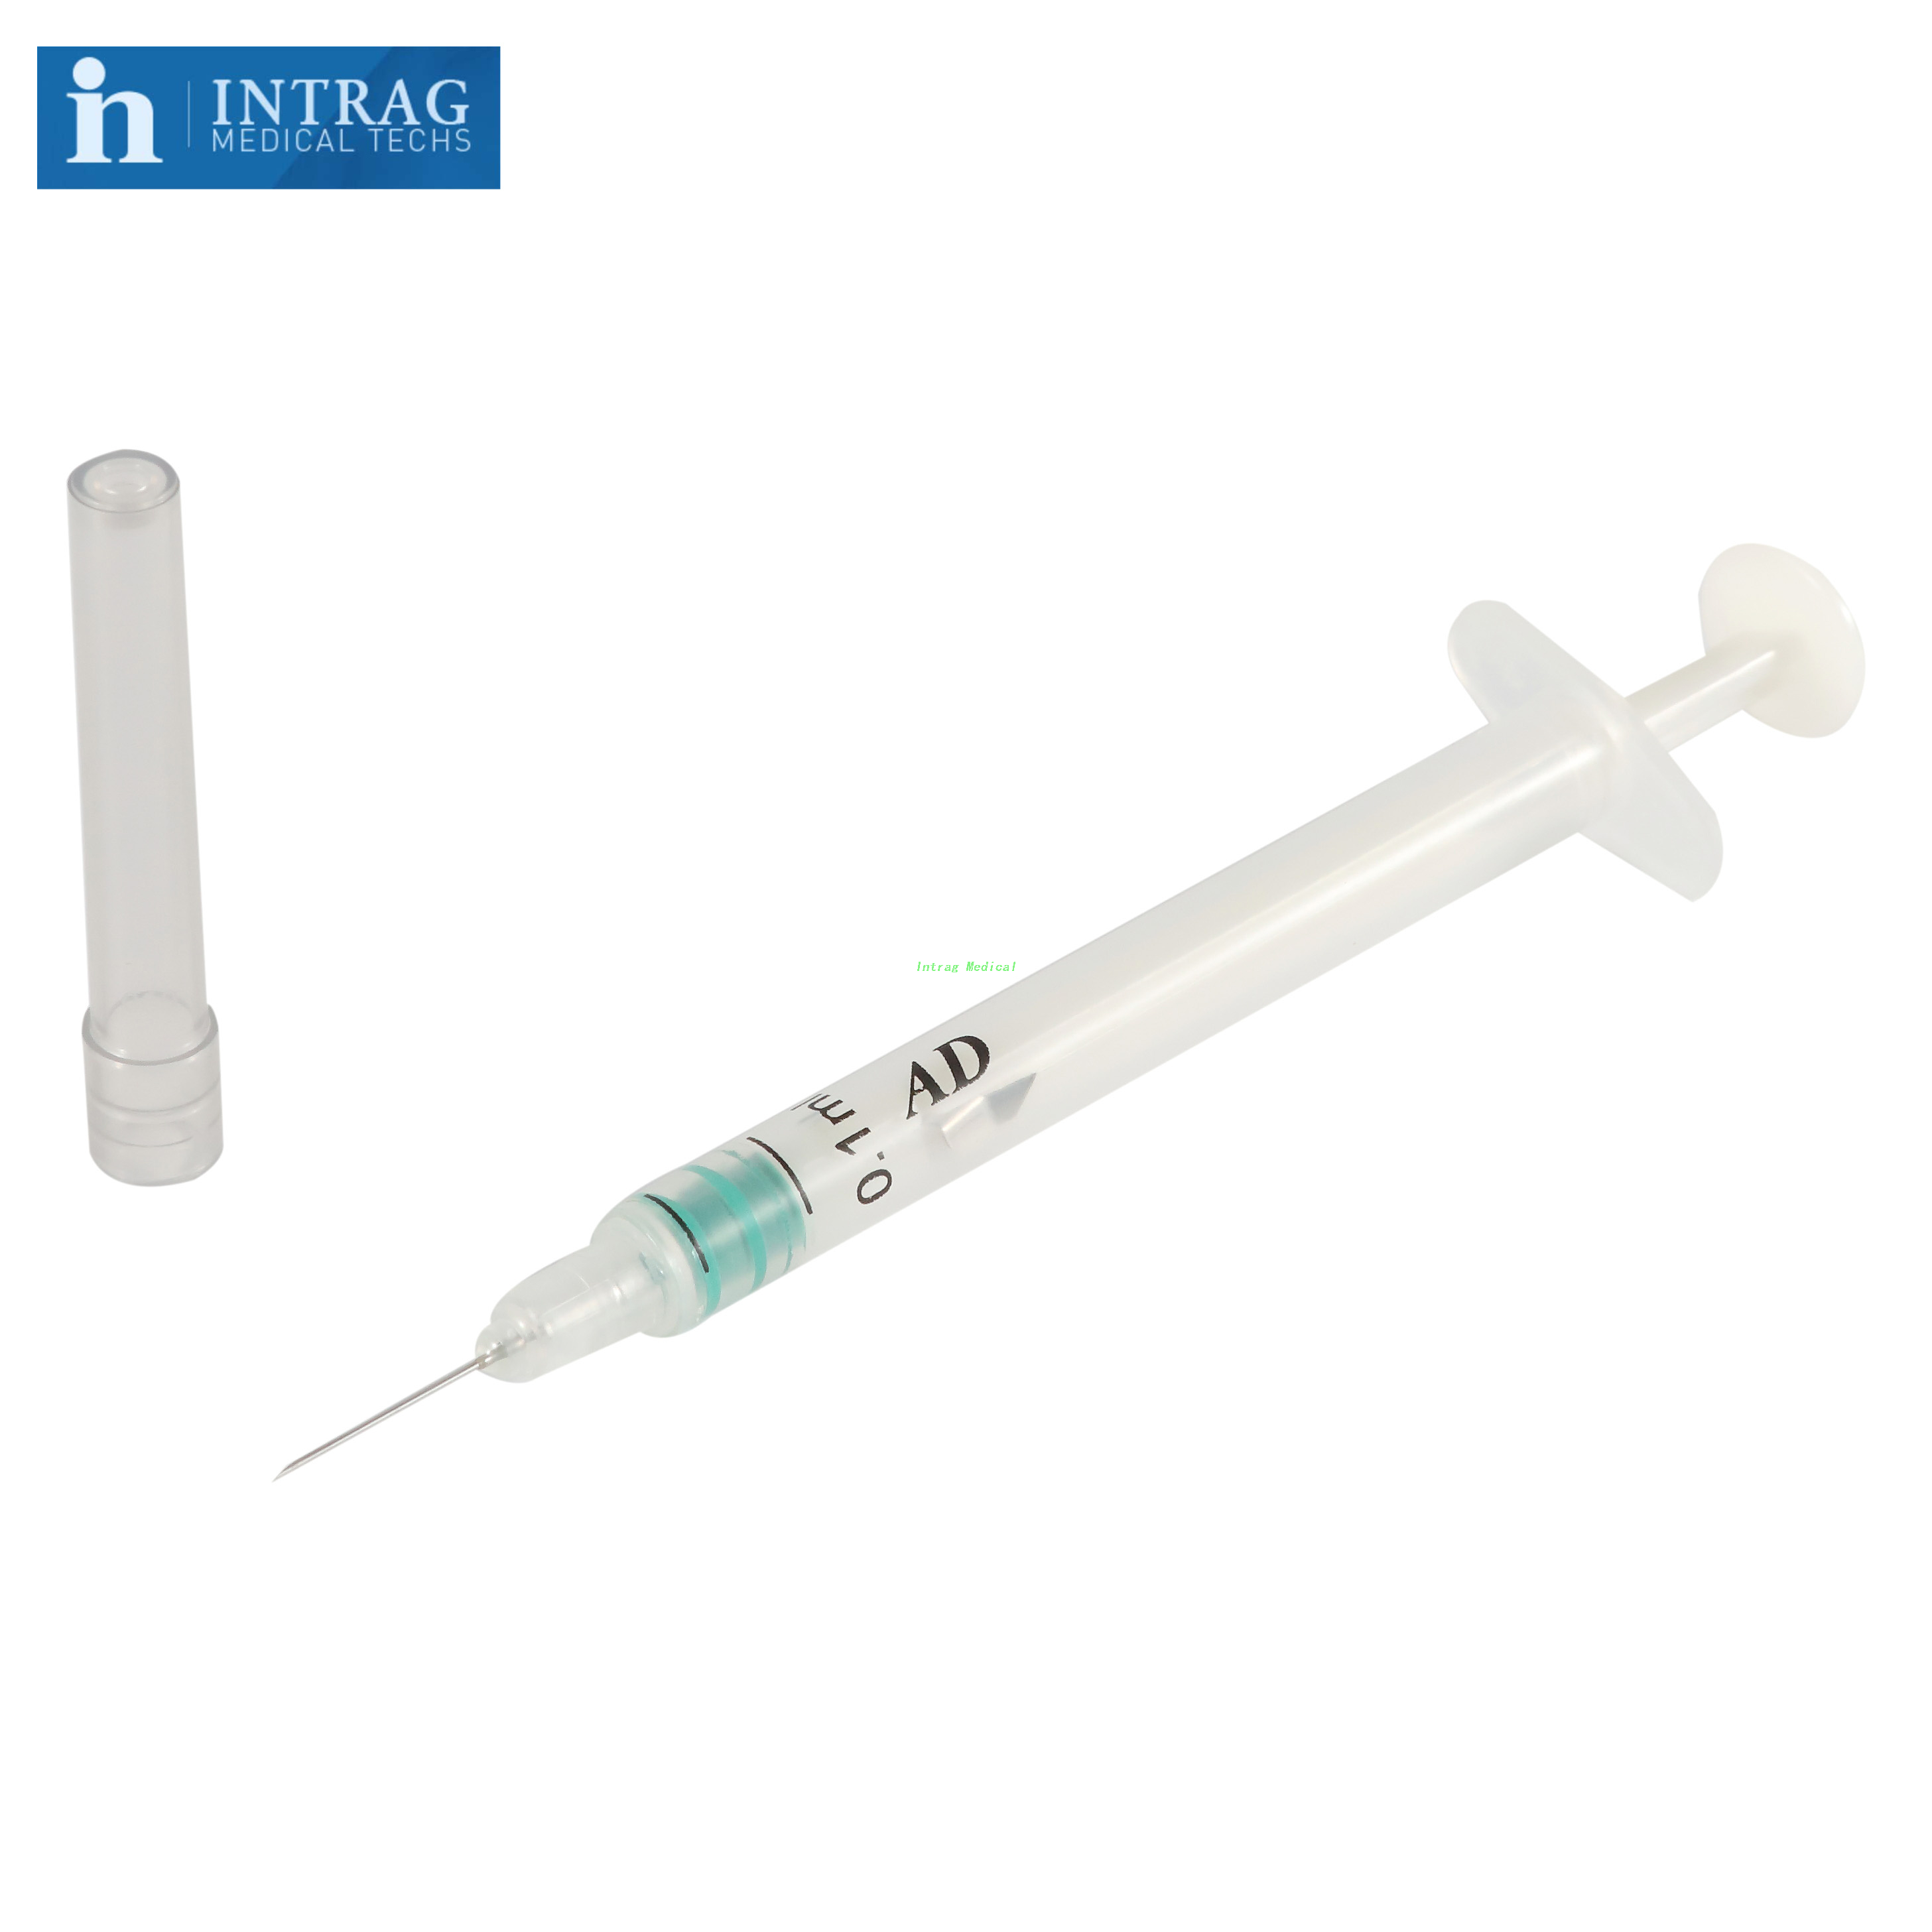 Auto-Disable Syringe For Fixed Dose Immunization